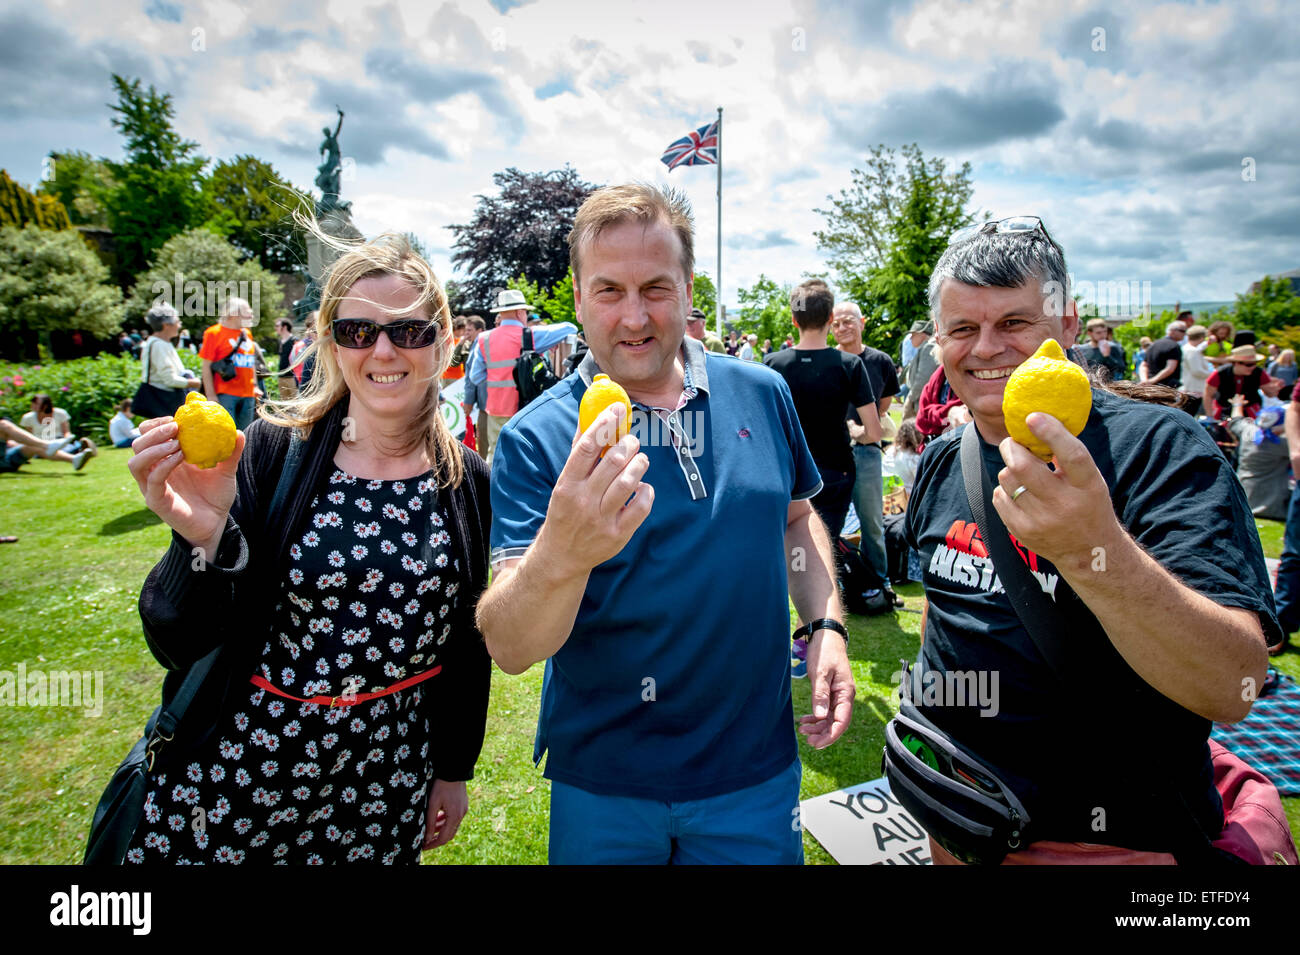 Exeter, Devon, UK. 13 Juin, 2015. Les membres de la foule le sybolic lemon au cours de l 'austérité Devon fin maintenant !' rallye organisé dans Northernhay Gardens, Exeter sur juin13th, 2015 à Exeter, UK Crédit : Clive Chilvers/Alamy Live News Banque D'Images